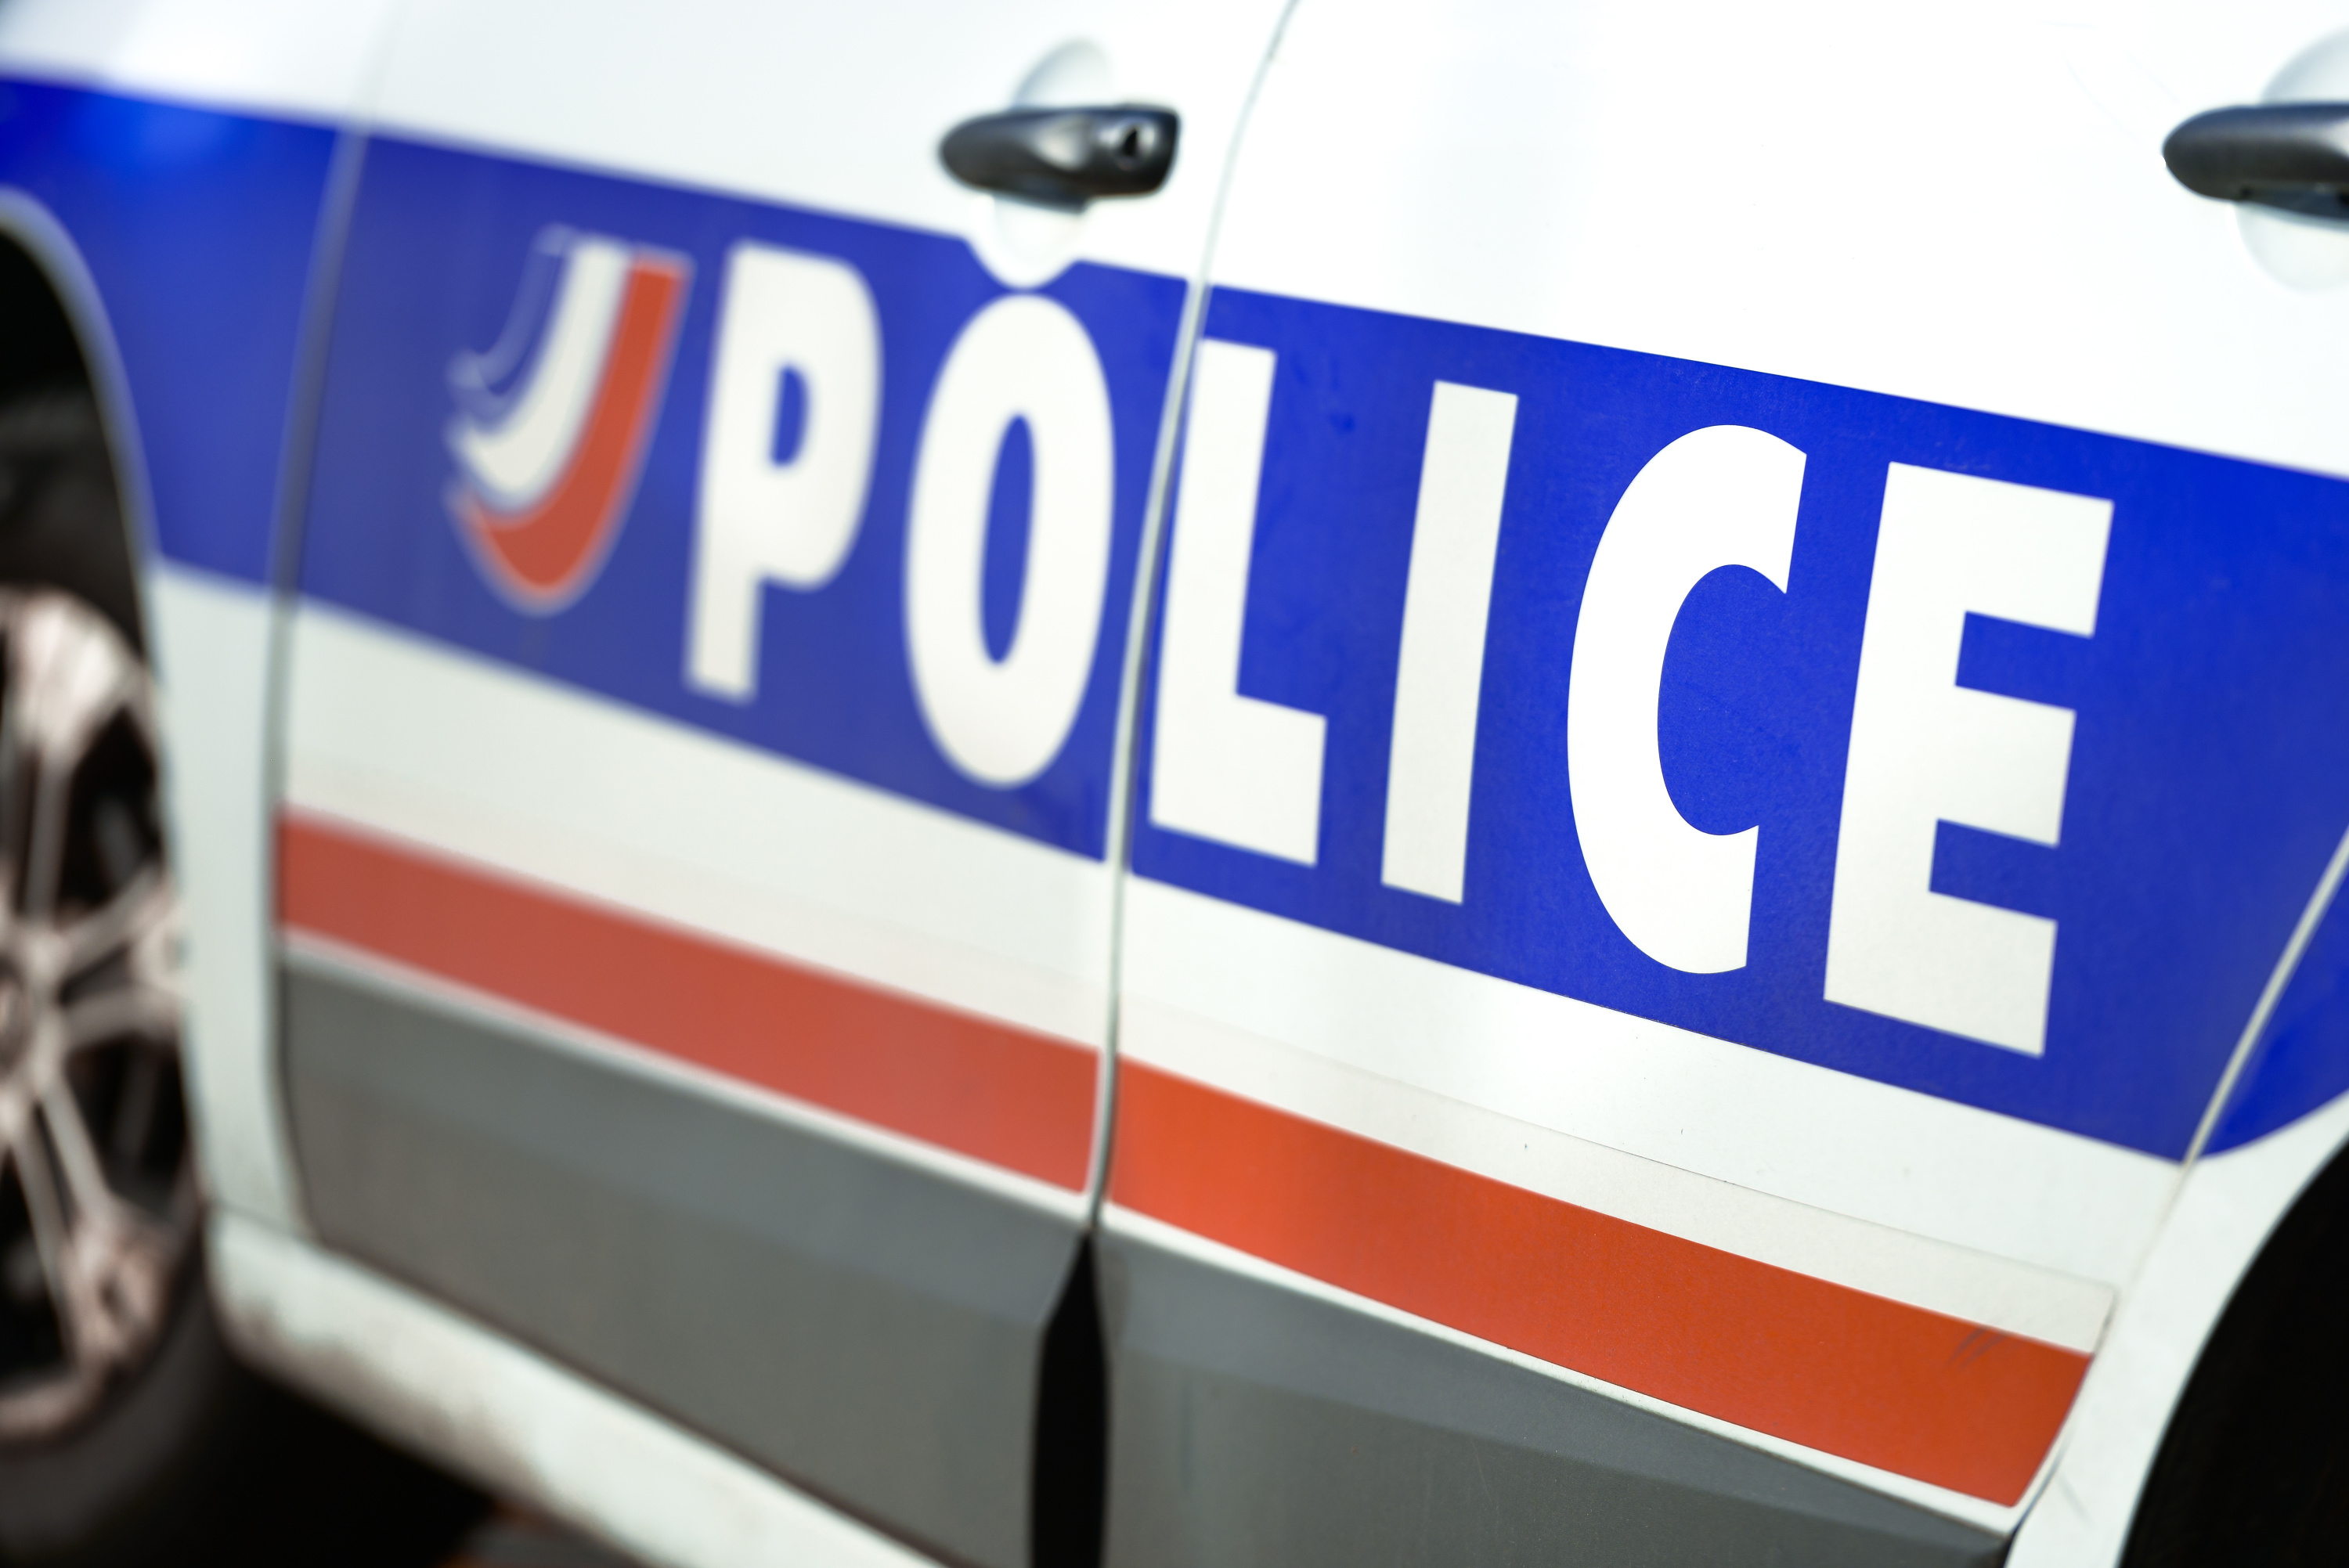 Valence : un individu interpellé après avoir crevé les pneus d'un véhicule de police